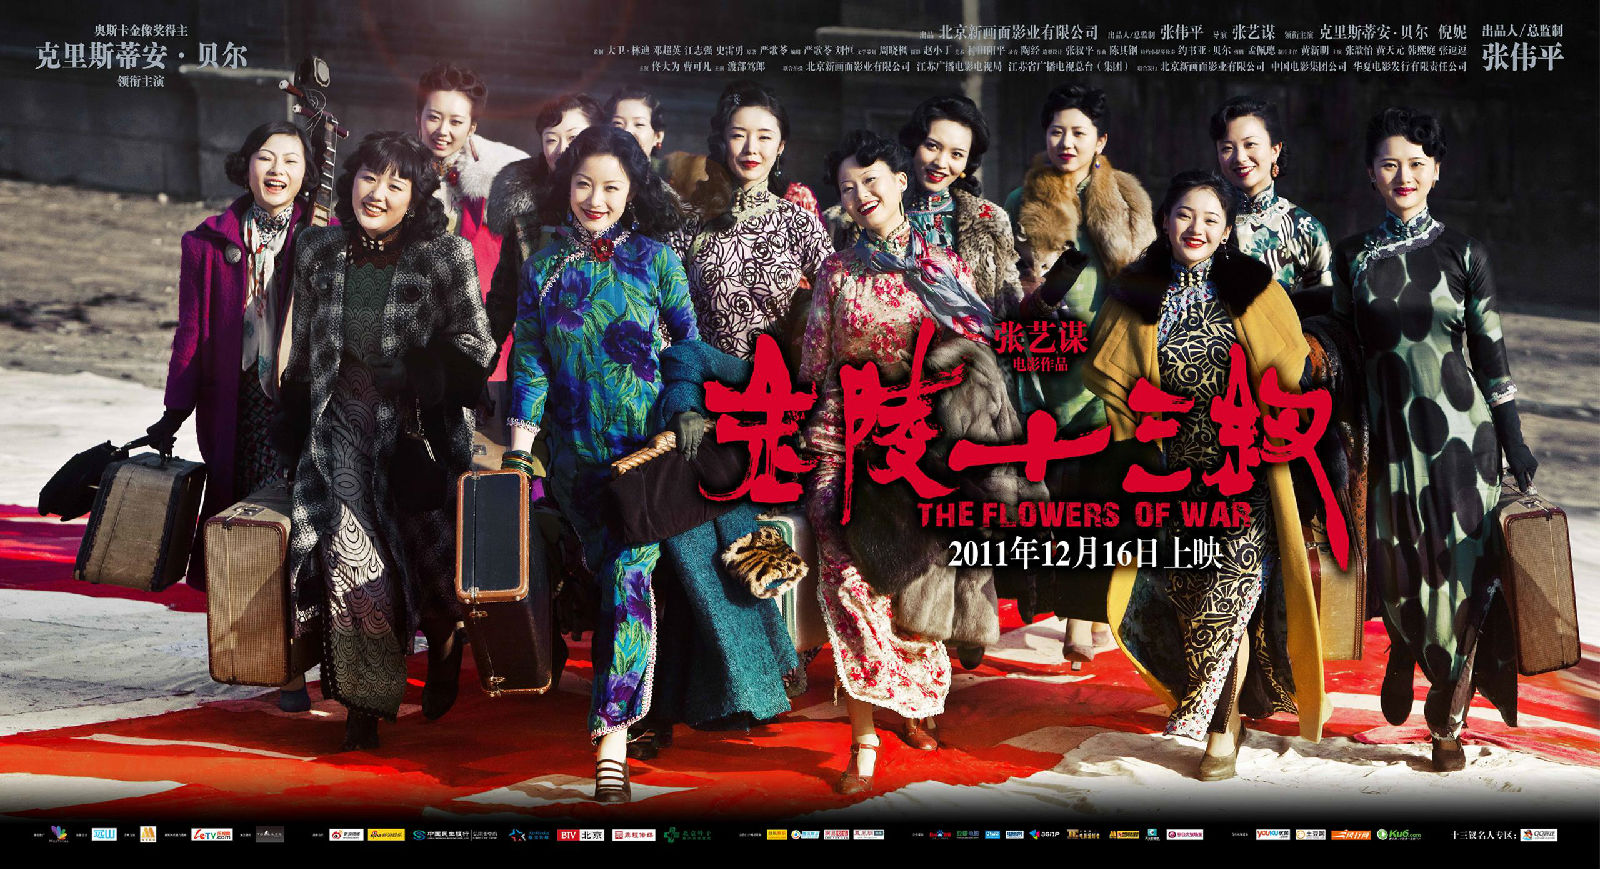 Qual foi o último filme que você assistiu? - Página 14 Flowers-of-war-13-nanjing-flowers-2011-zhang-yimou